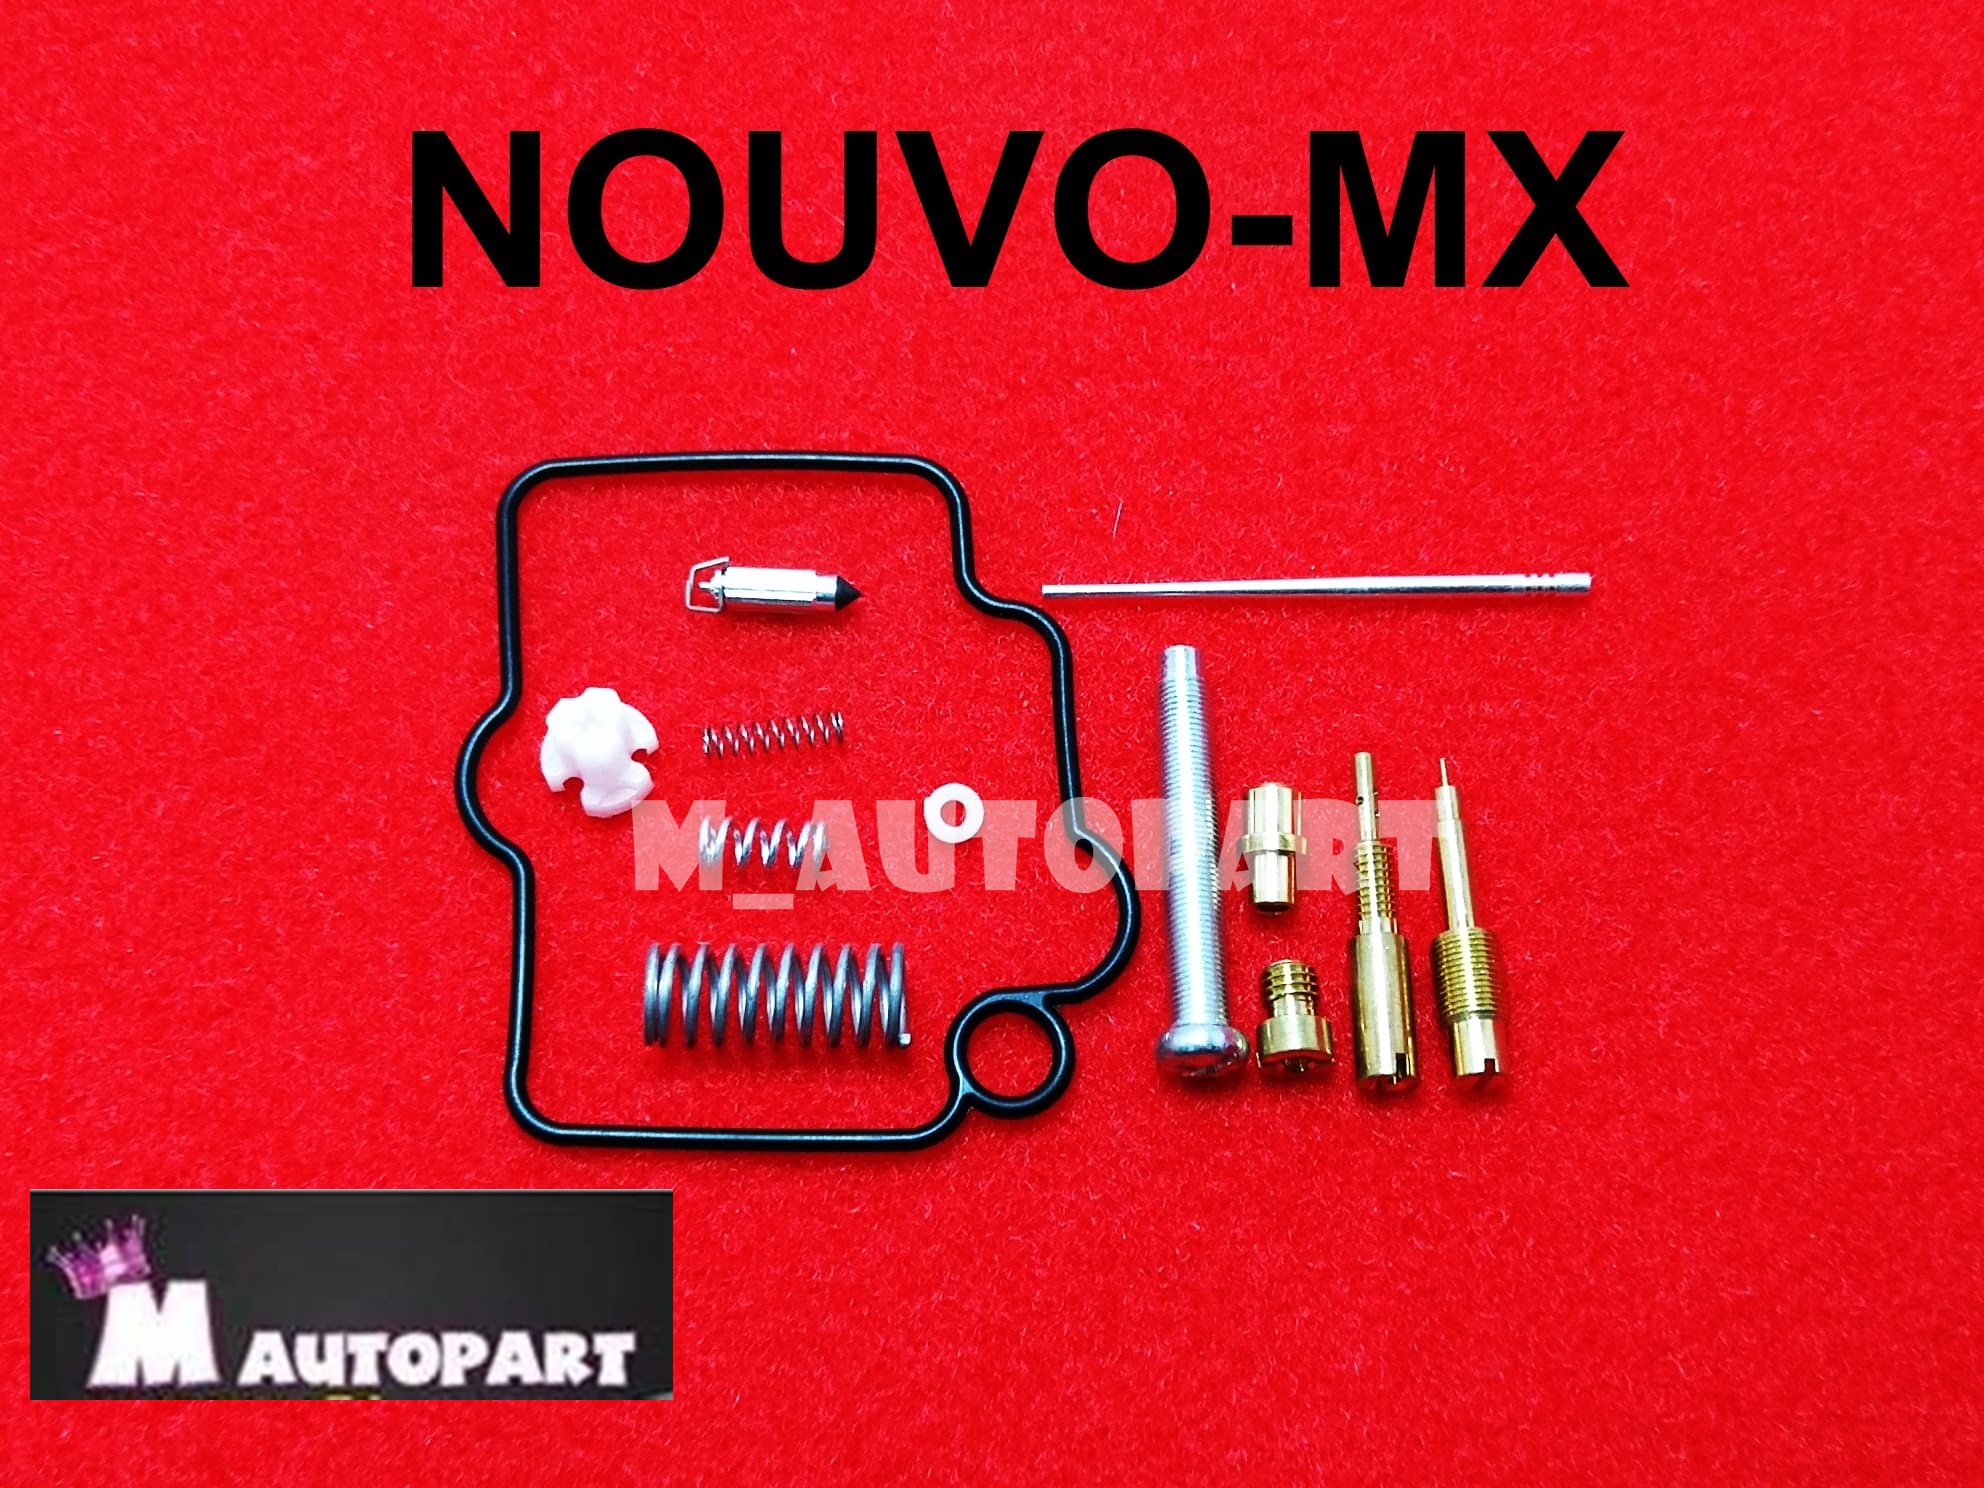 ชุดซ่อมคาร์บูNOUVO-MX ชุดซ่อมคาบิวนูโว-MX  ชุดซ่อมคาร์บูเรเตอร์ยามาฮ่านูโว-MX